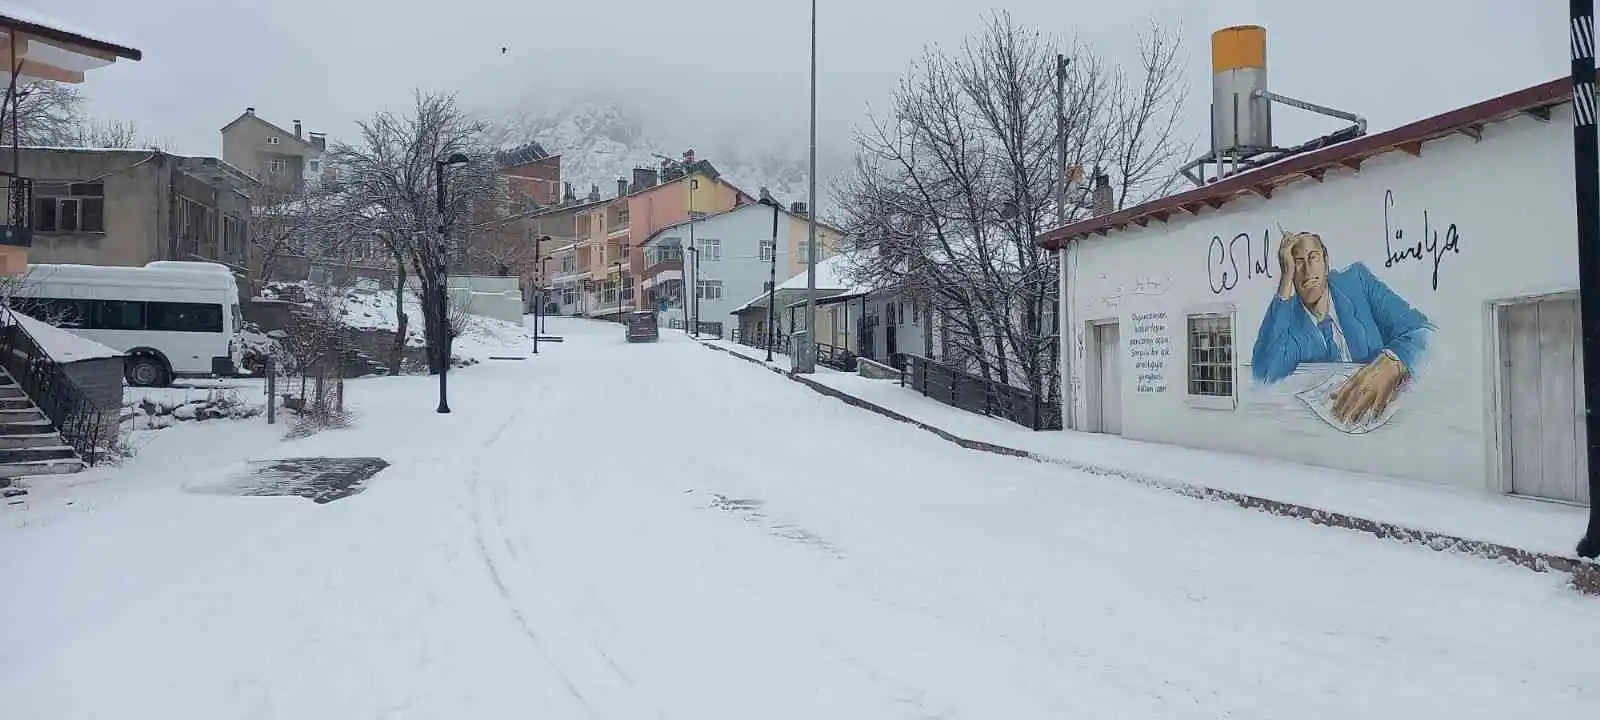 Son yılların en kurak kış mevsimini yaşayan Pülümür’de kar sevinci
